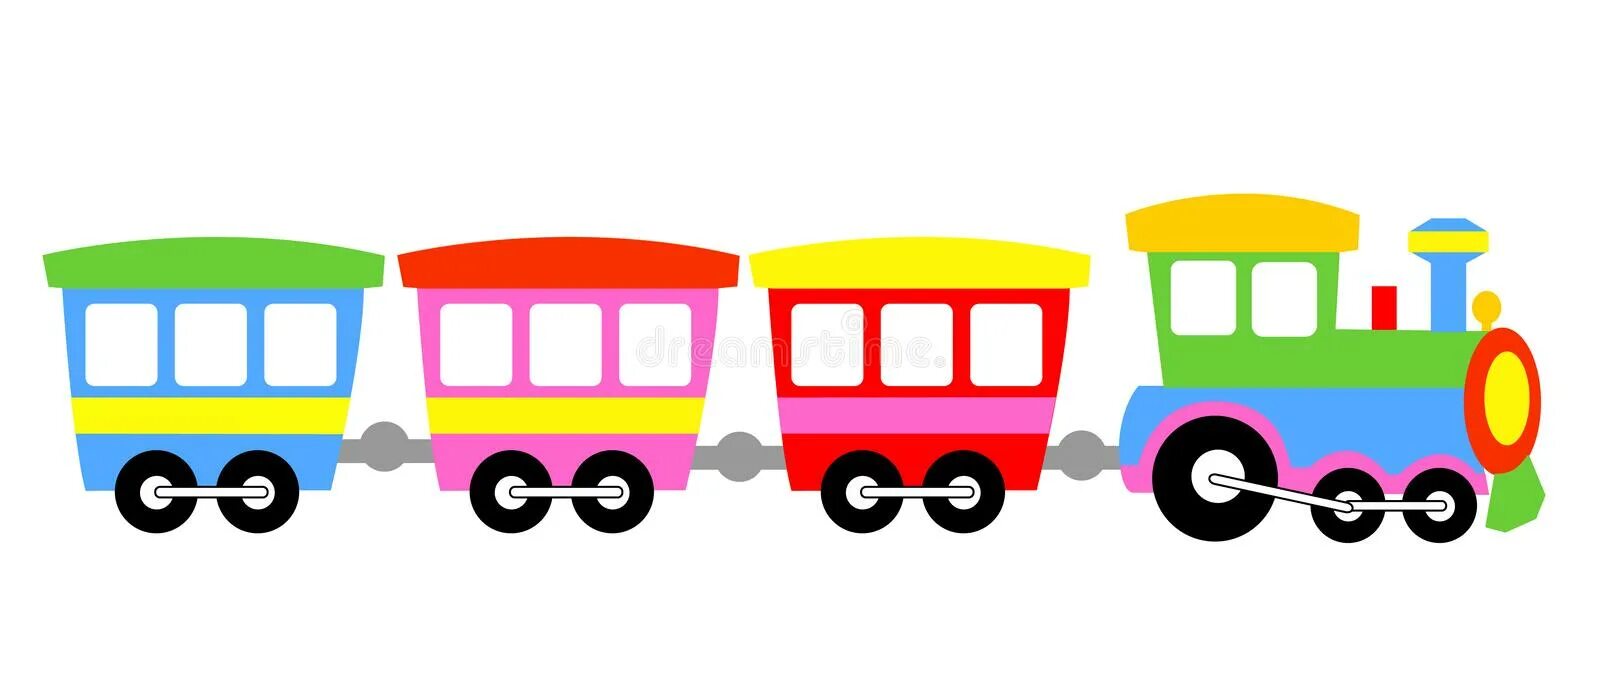 Три математика ехали в разных вагонах. Паровозик с вагончиками для детей. Паровоз с вагонами для детей. Разноцветные вагончики. Разноцветные вагончики для детей.